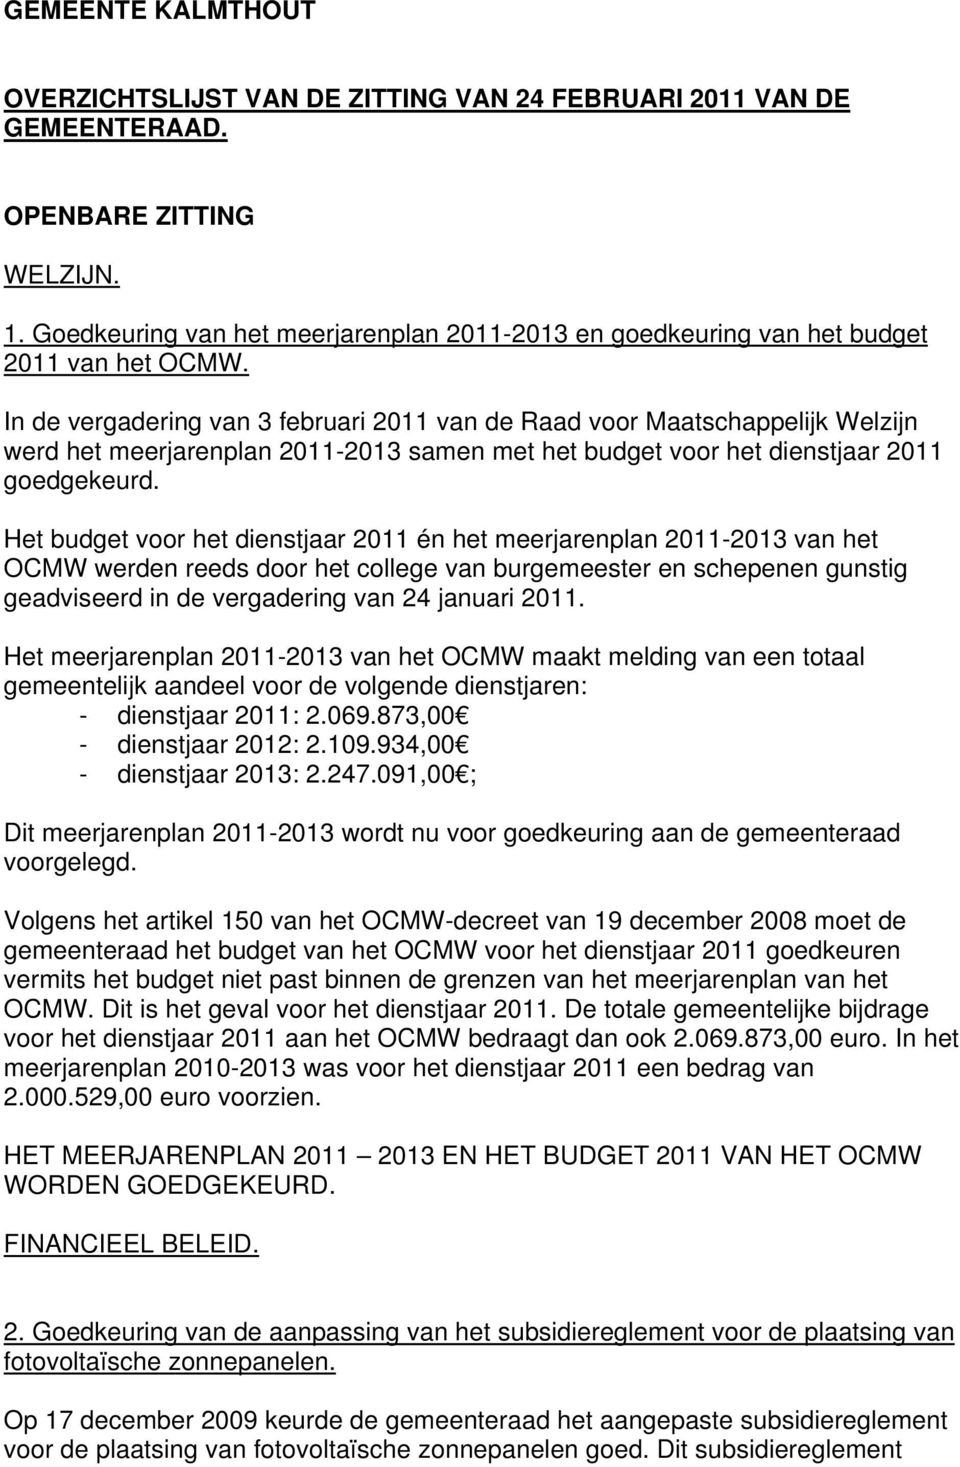 In de vergadering van 3 februari 2011 van de Raad voor Maatschappelijk Welzijn werd het meerjarenplan 2011-2013 samen met het budget voor het dienstjaar 2011 goedgekeurd.